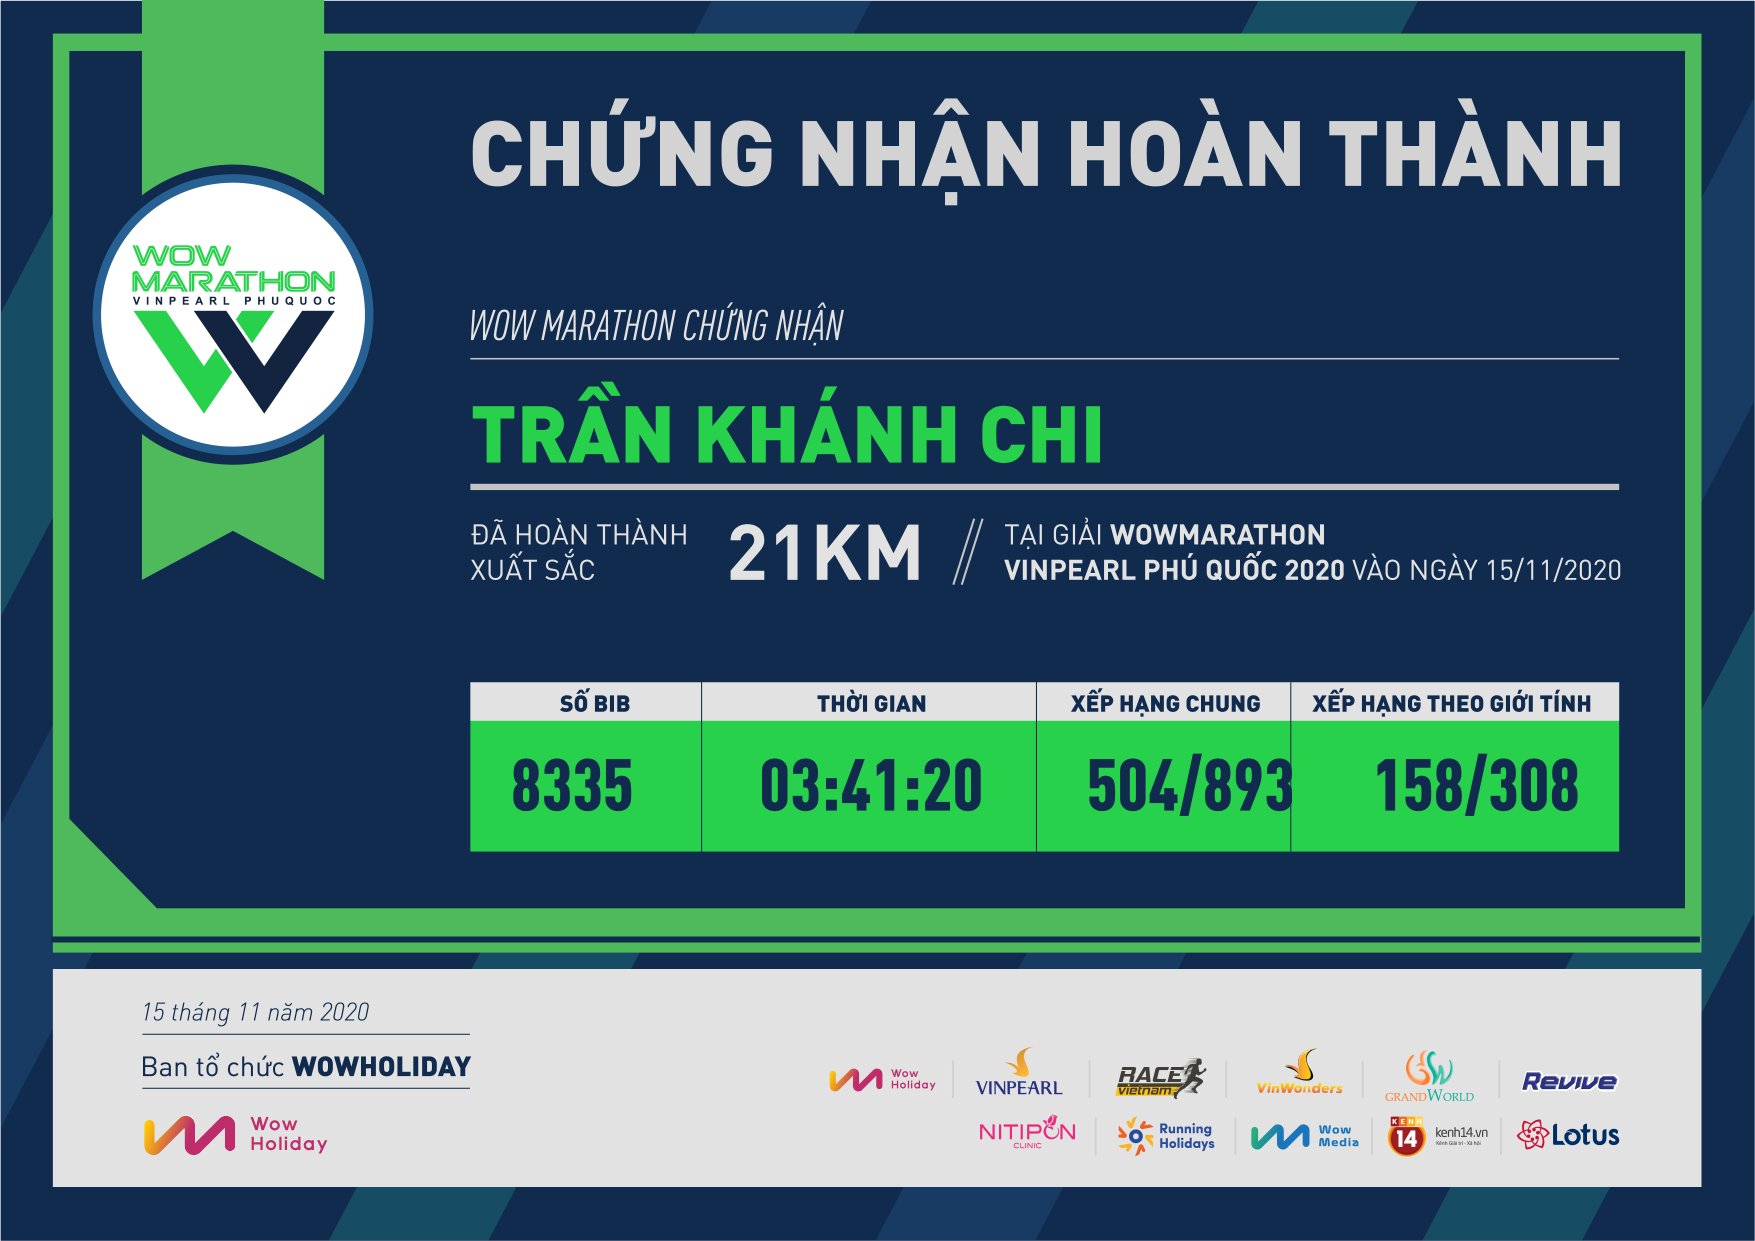 8335 - Trần Khánh Chi